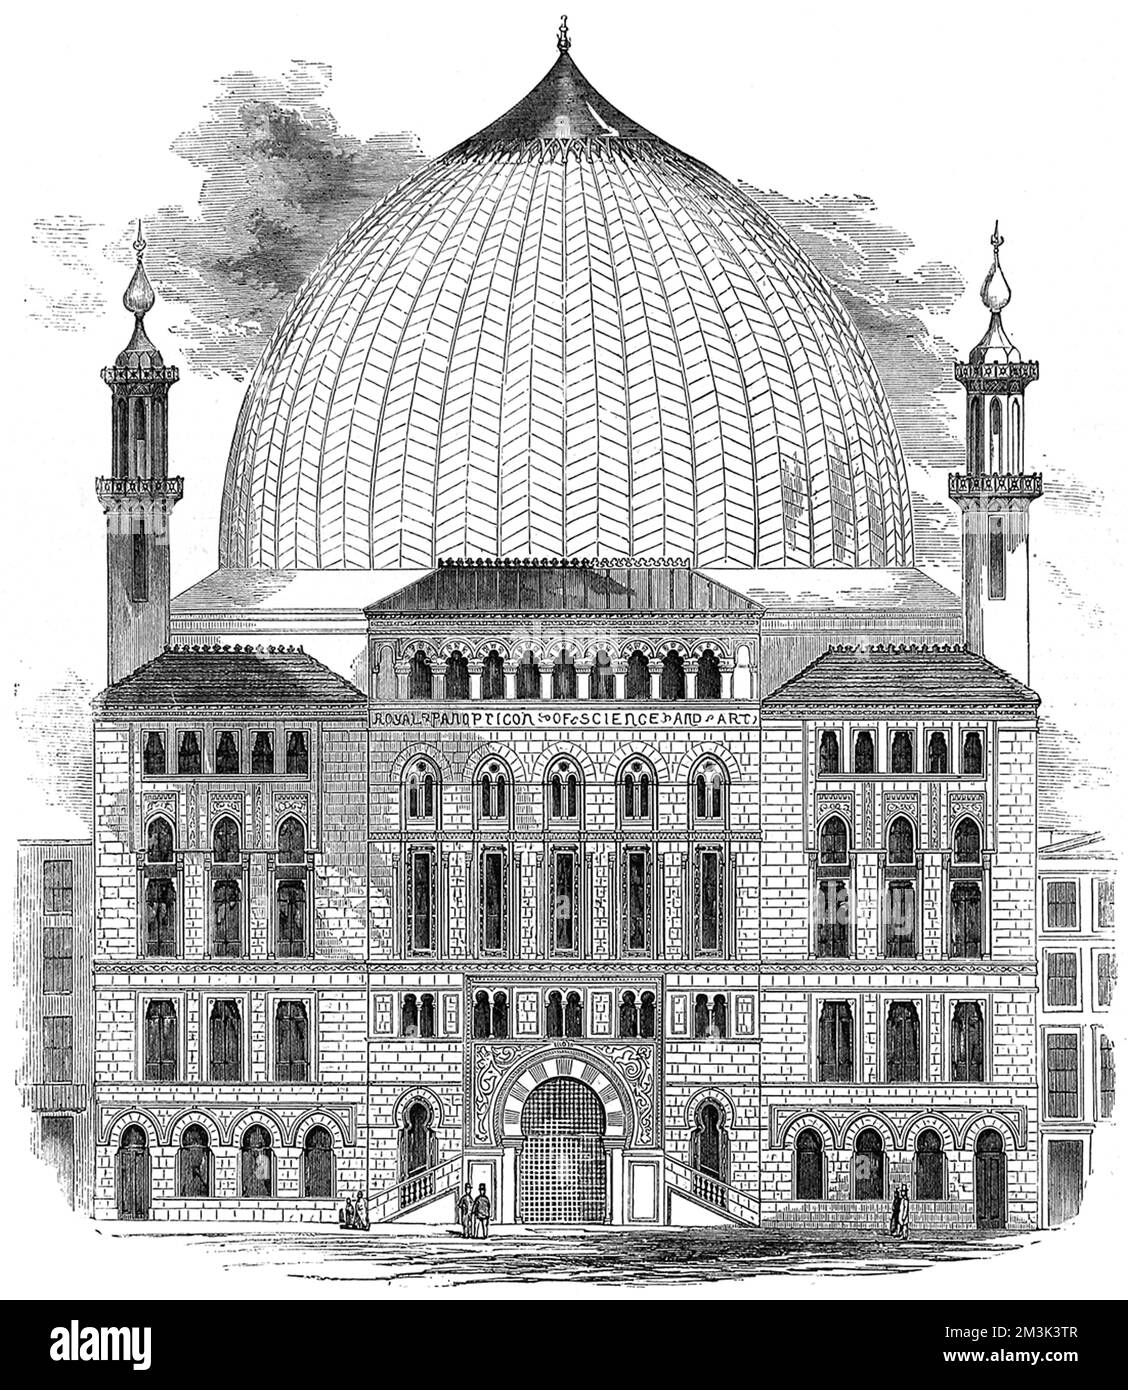 Das königliche Panopticon für Wissenschaft und Kunst, das 1852 am Leicester Square gebaut wurde. Beim Bau war die Kuppel des Panopticon etwas kleiner, als dieses Bild vermuten lässt. Dieses Gebäude wurde später zum Alhambra-Theater und dann zum Odeon. 1852 Stockfoto